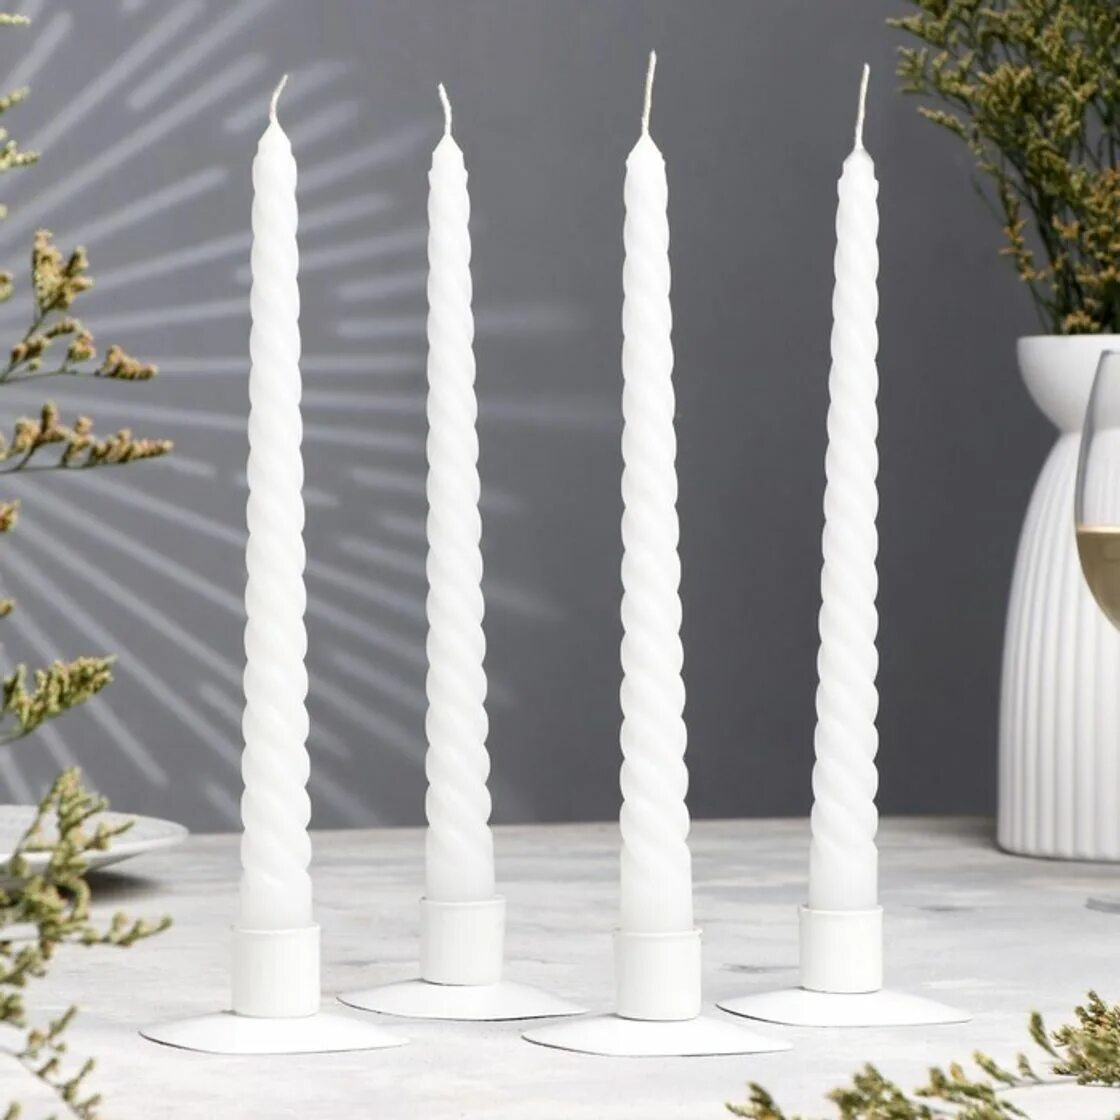 Витые свечи. Столовые свечи. Свечи витые белые. Свеча античная набор 4 шт. Белая.